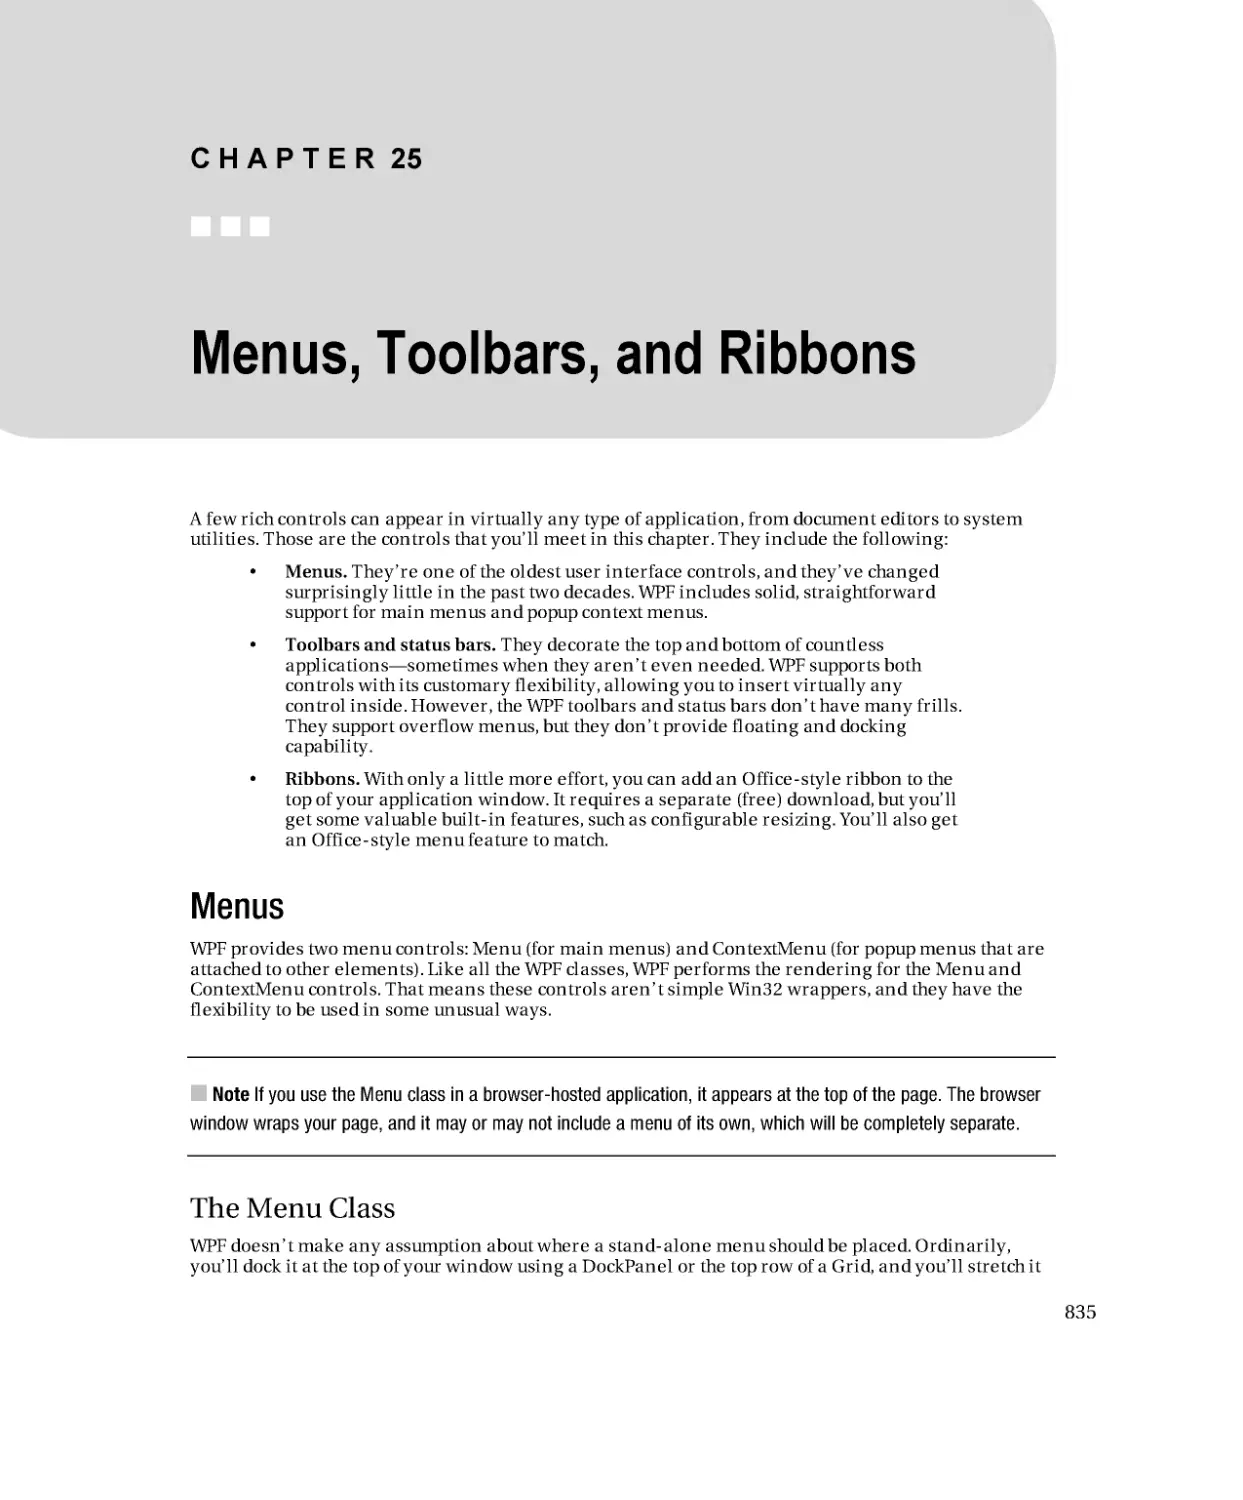 Menus, Toolbars, and Ribbons